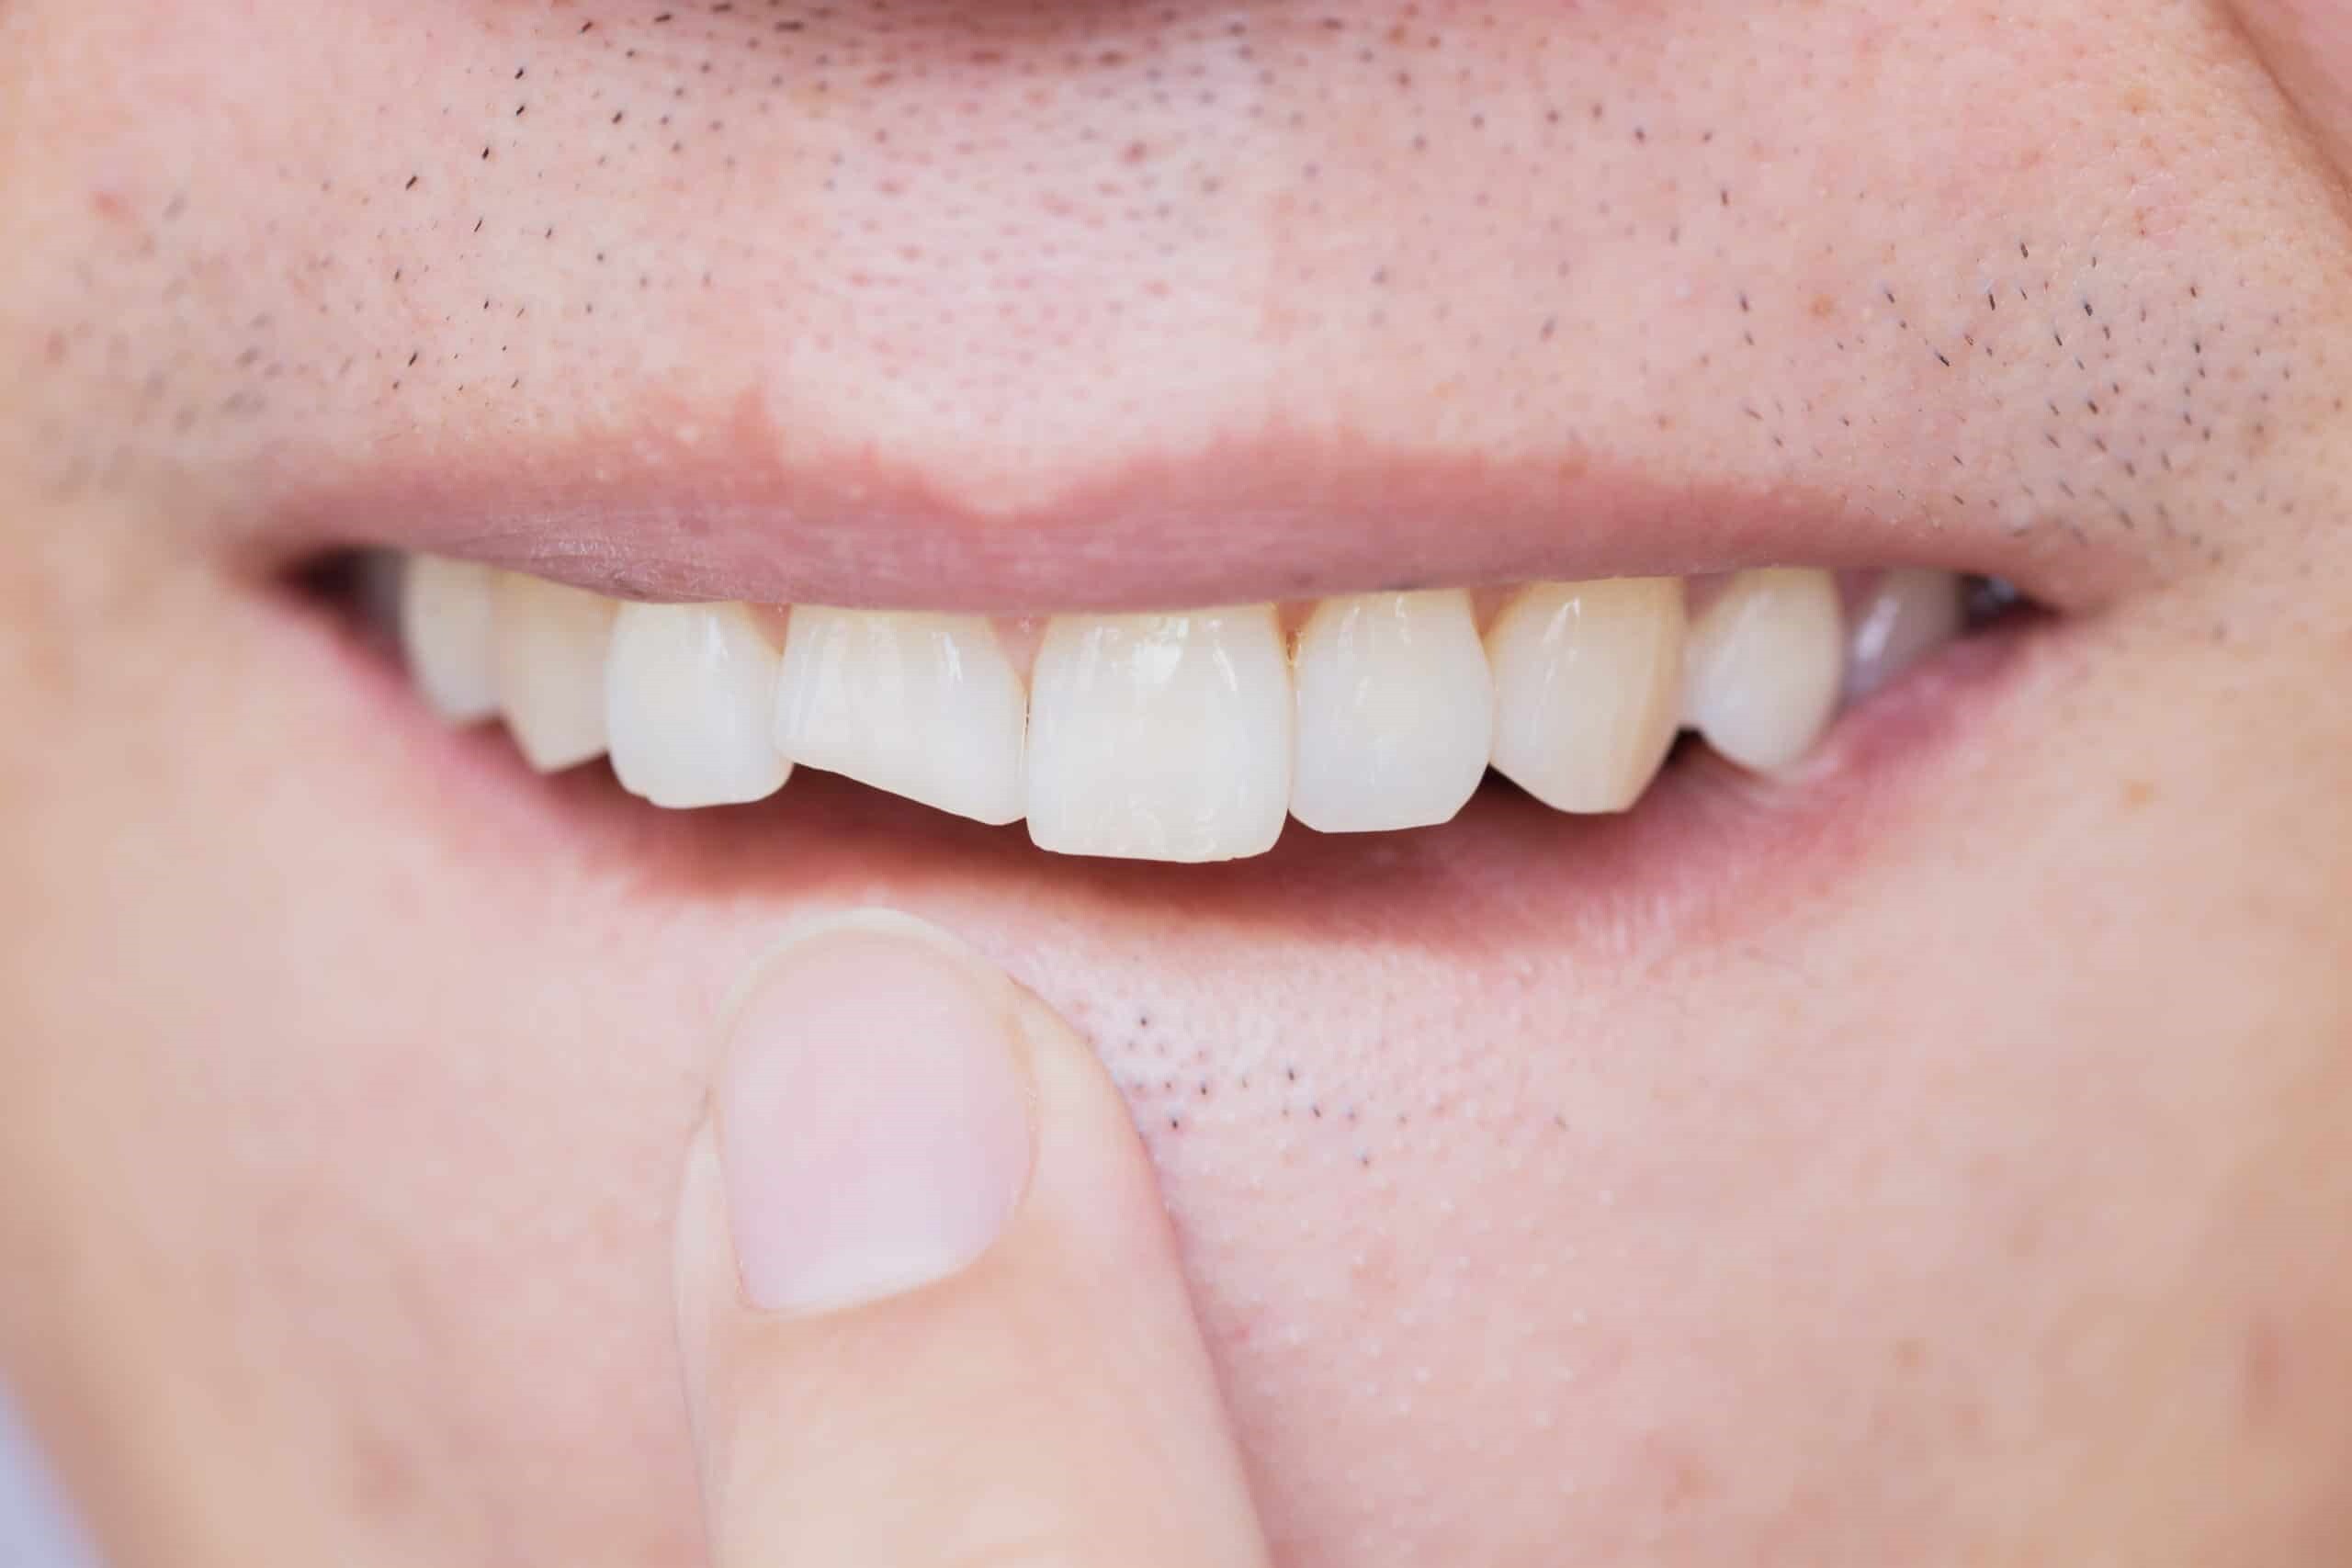 درمان ترک و شکستگی دندان: جلوگیری از تخریب بیشتر دندان